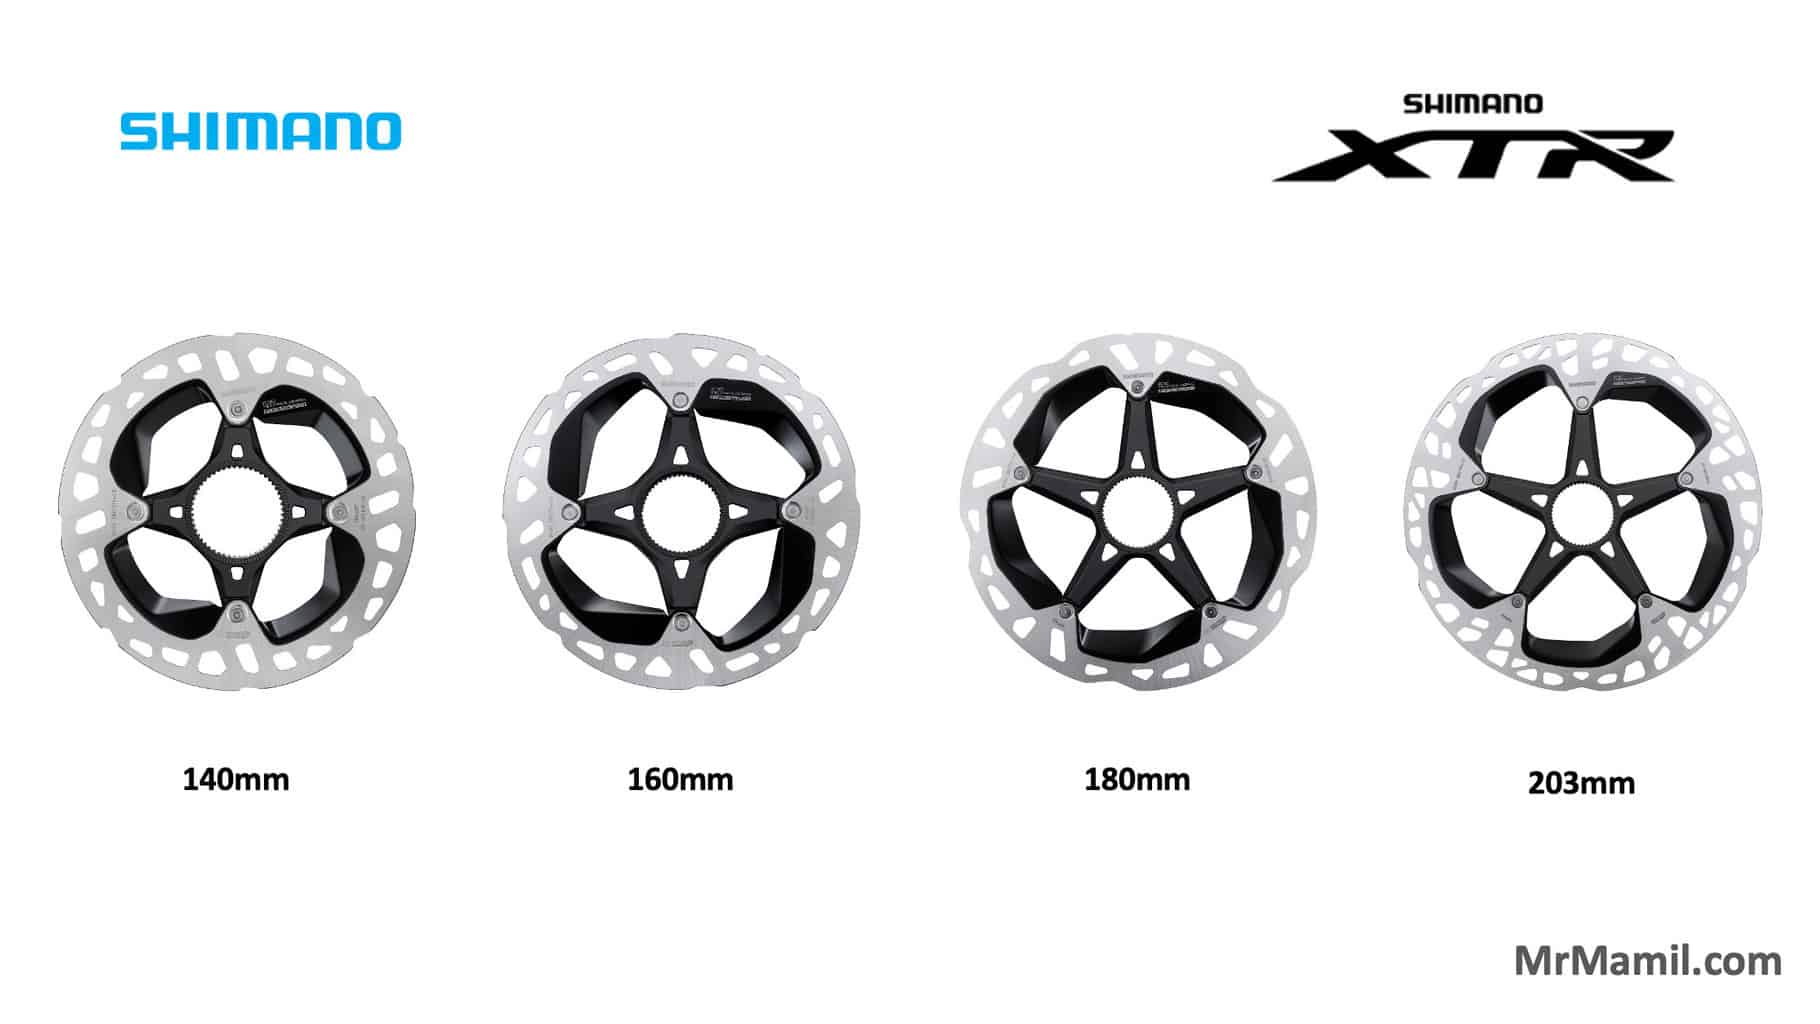 Shimano XTR MT900 Rotors various sizes